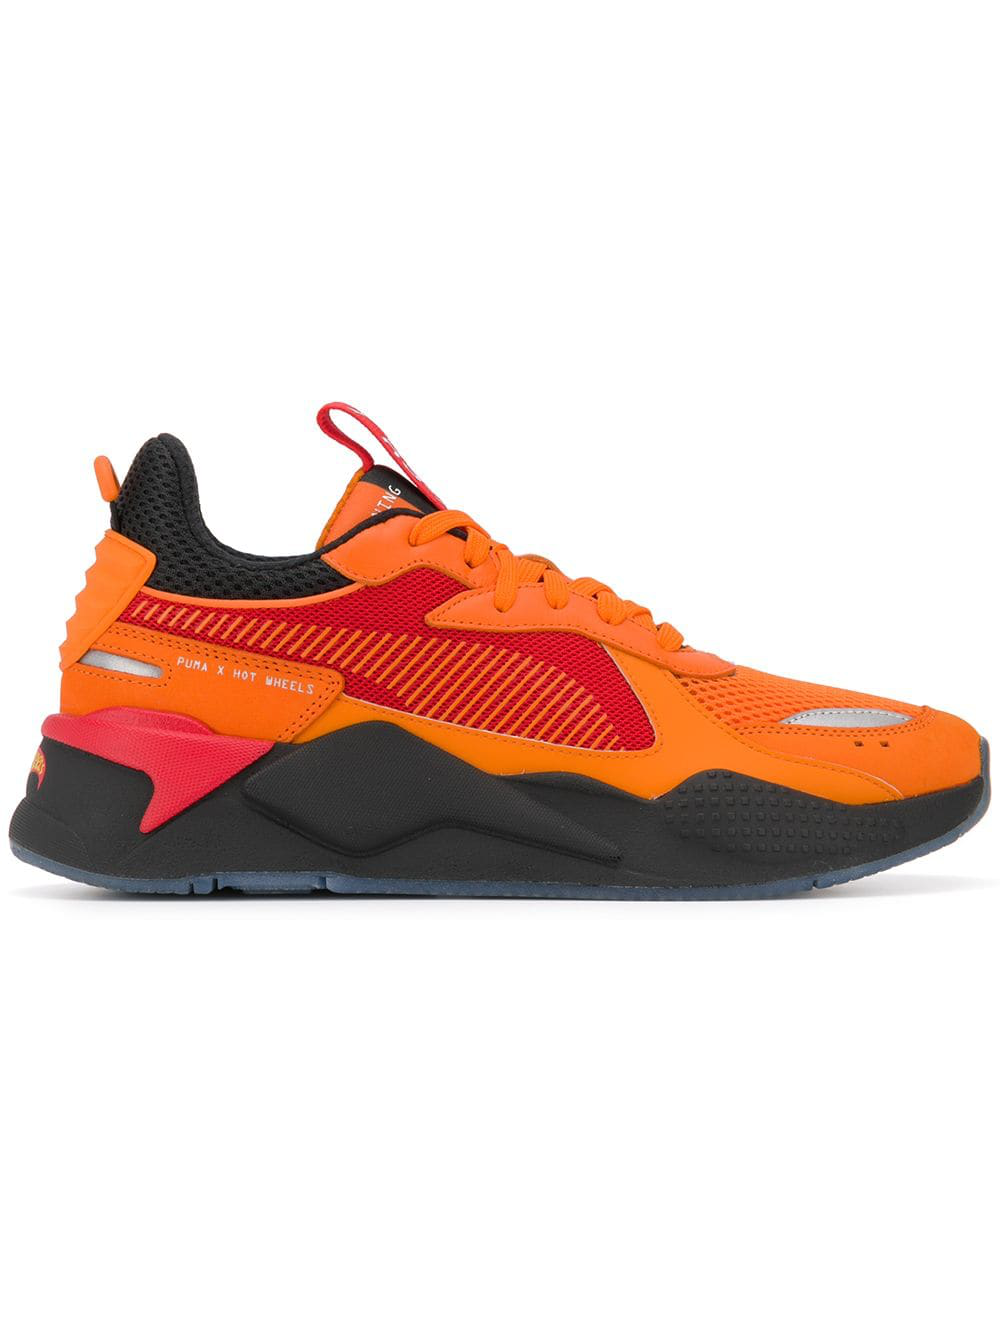 Puma X Hot Wheels Sneakers - Orange | ModeSens